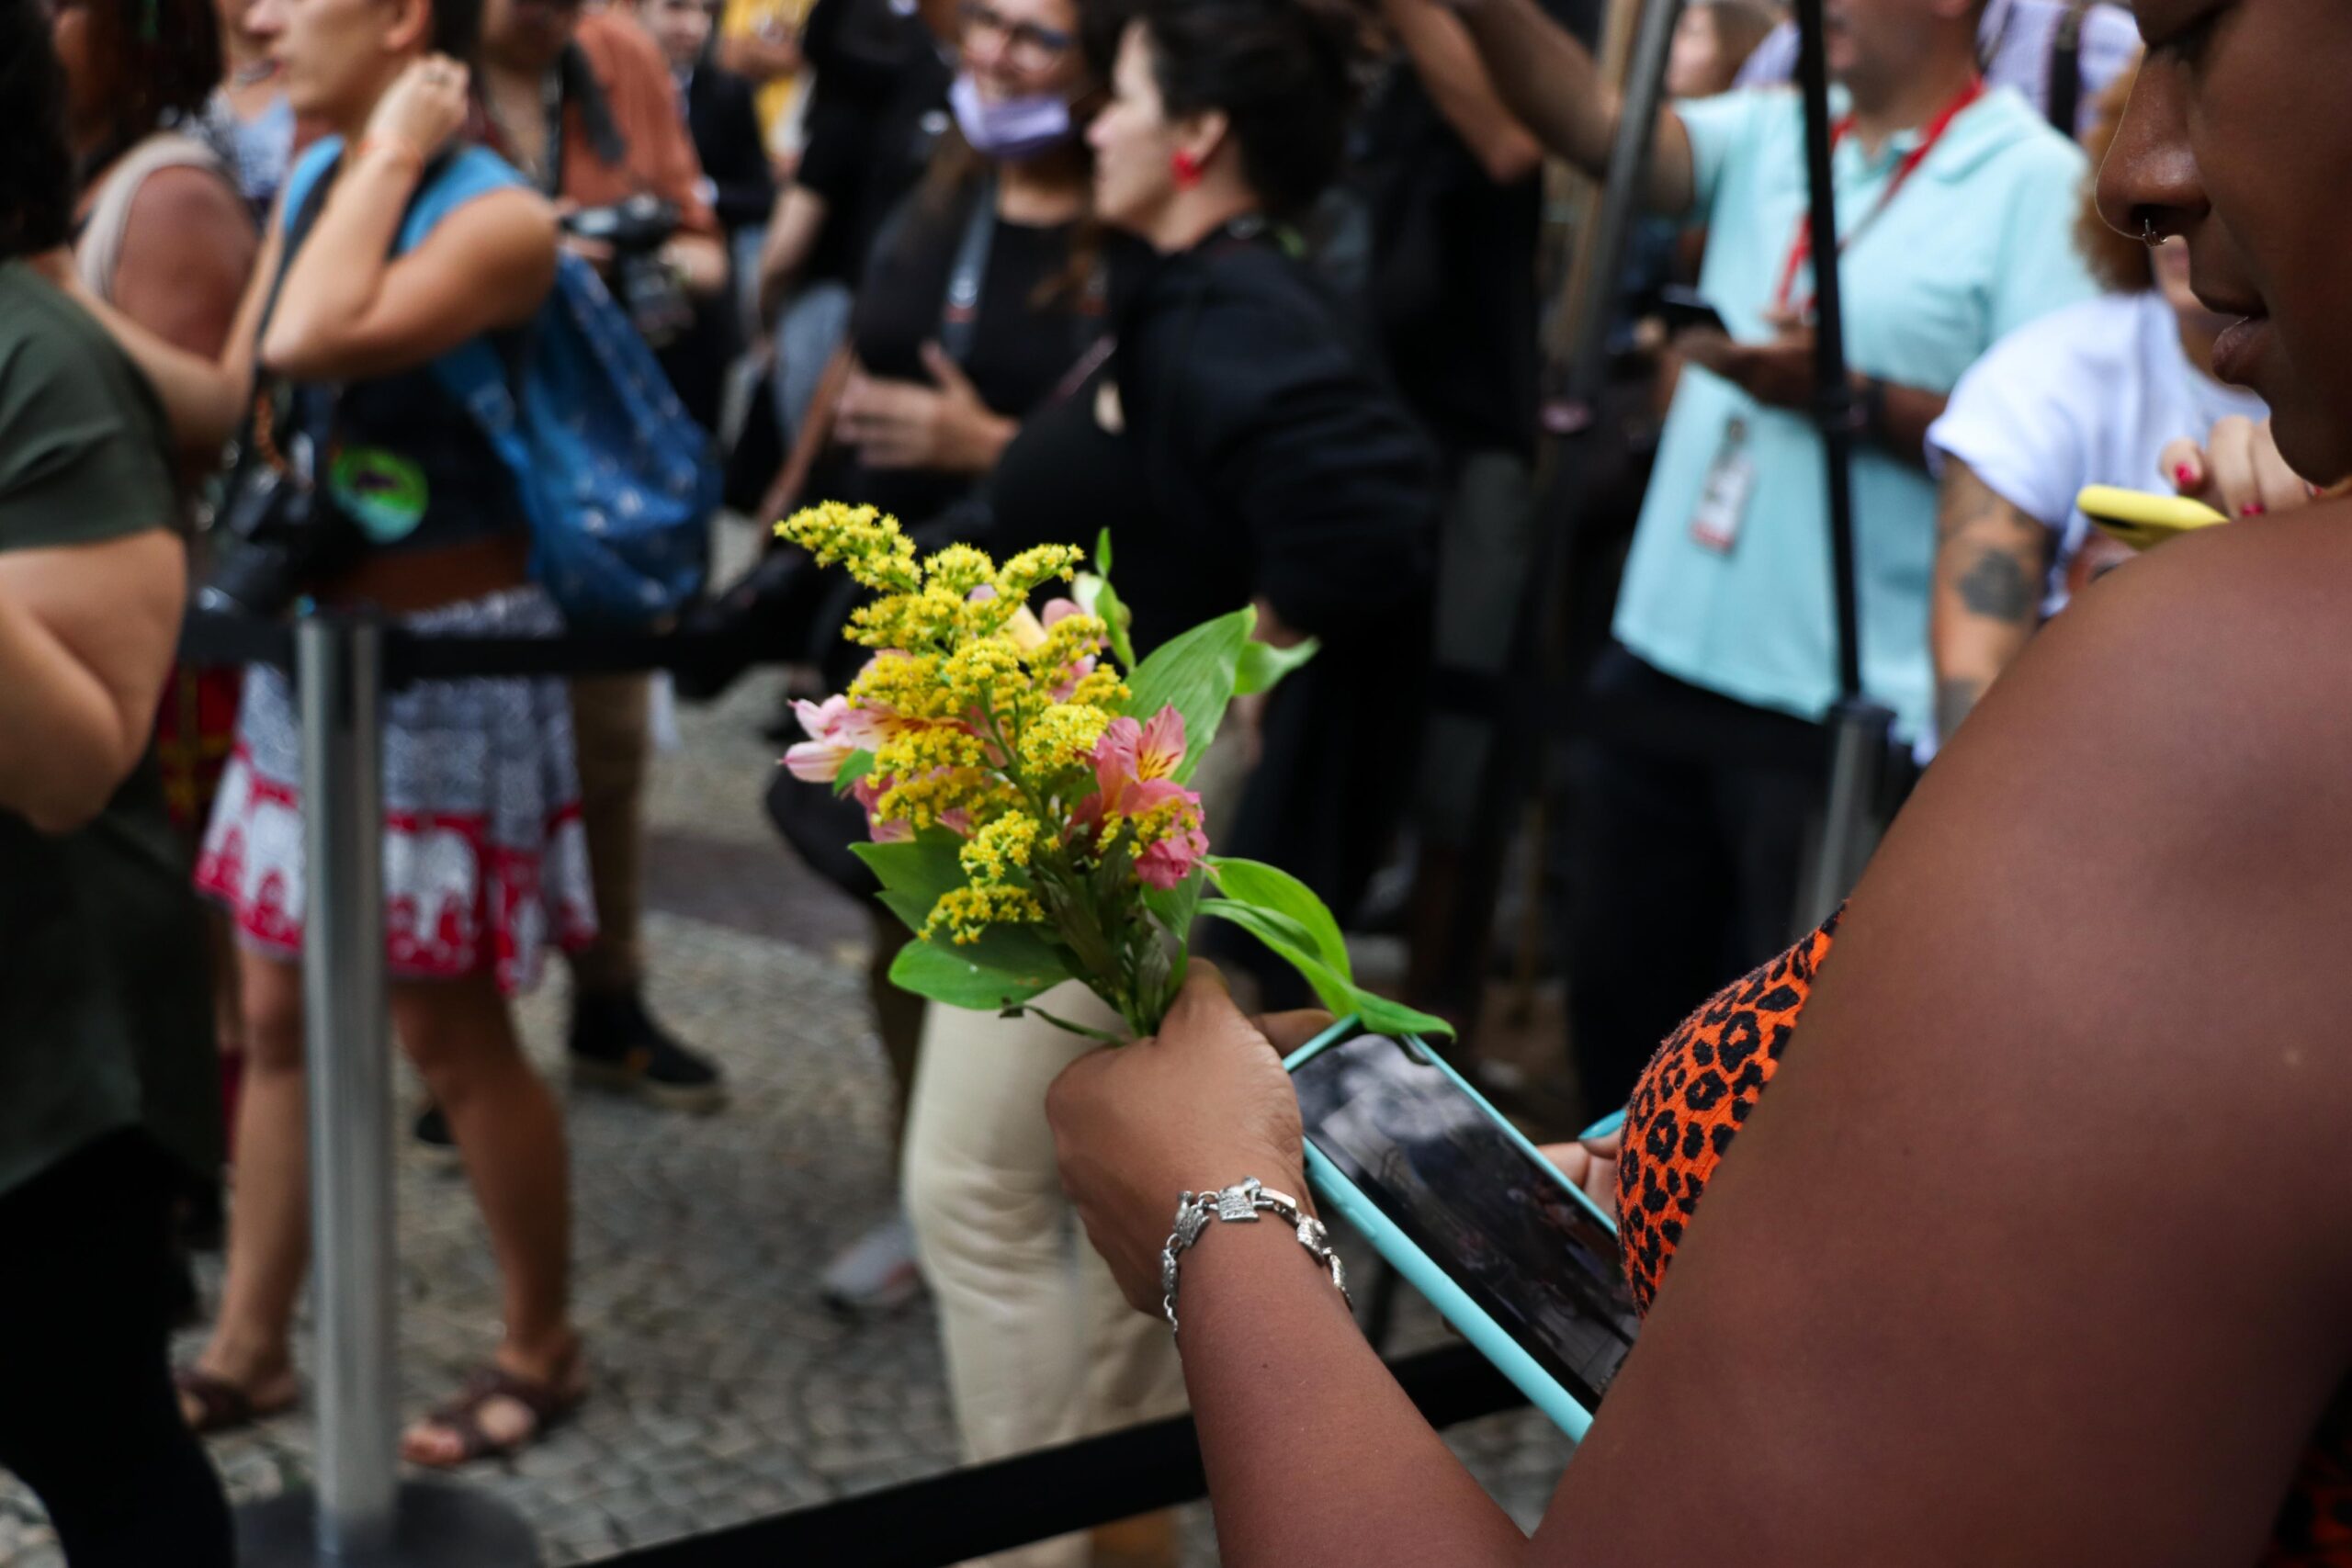 O público presente trouxe flores para depositar aos pés da estátua de Marielle em sua inauguração, em tributo à sua memória. Foto: Alexandre Cerqueira/ComCat